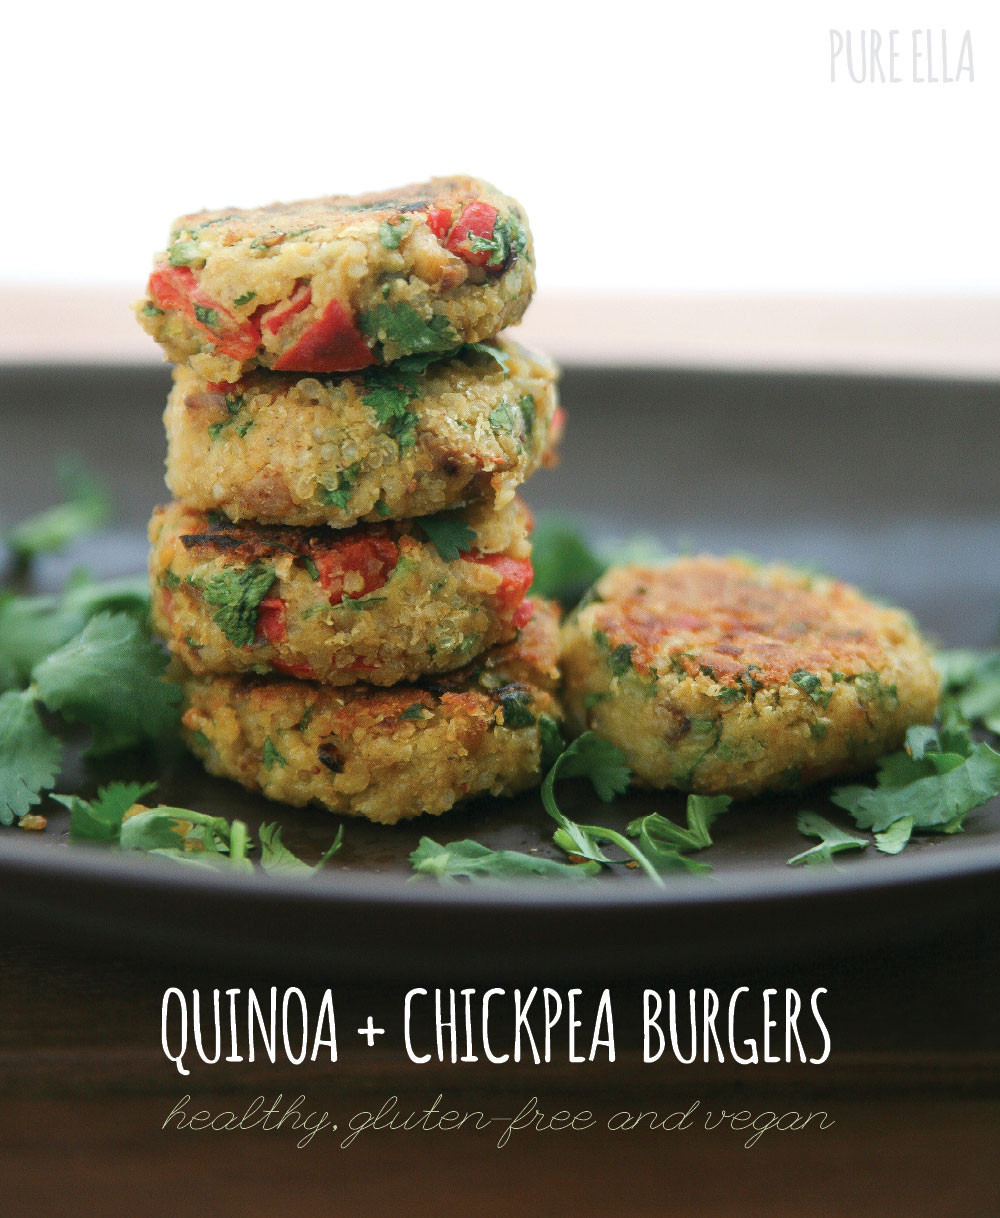 Vegan Chickpea Burgers Recipes
 Quinoa Chickpea Burgers Pure Ella